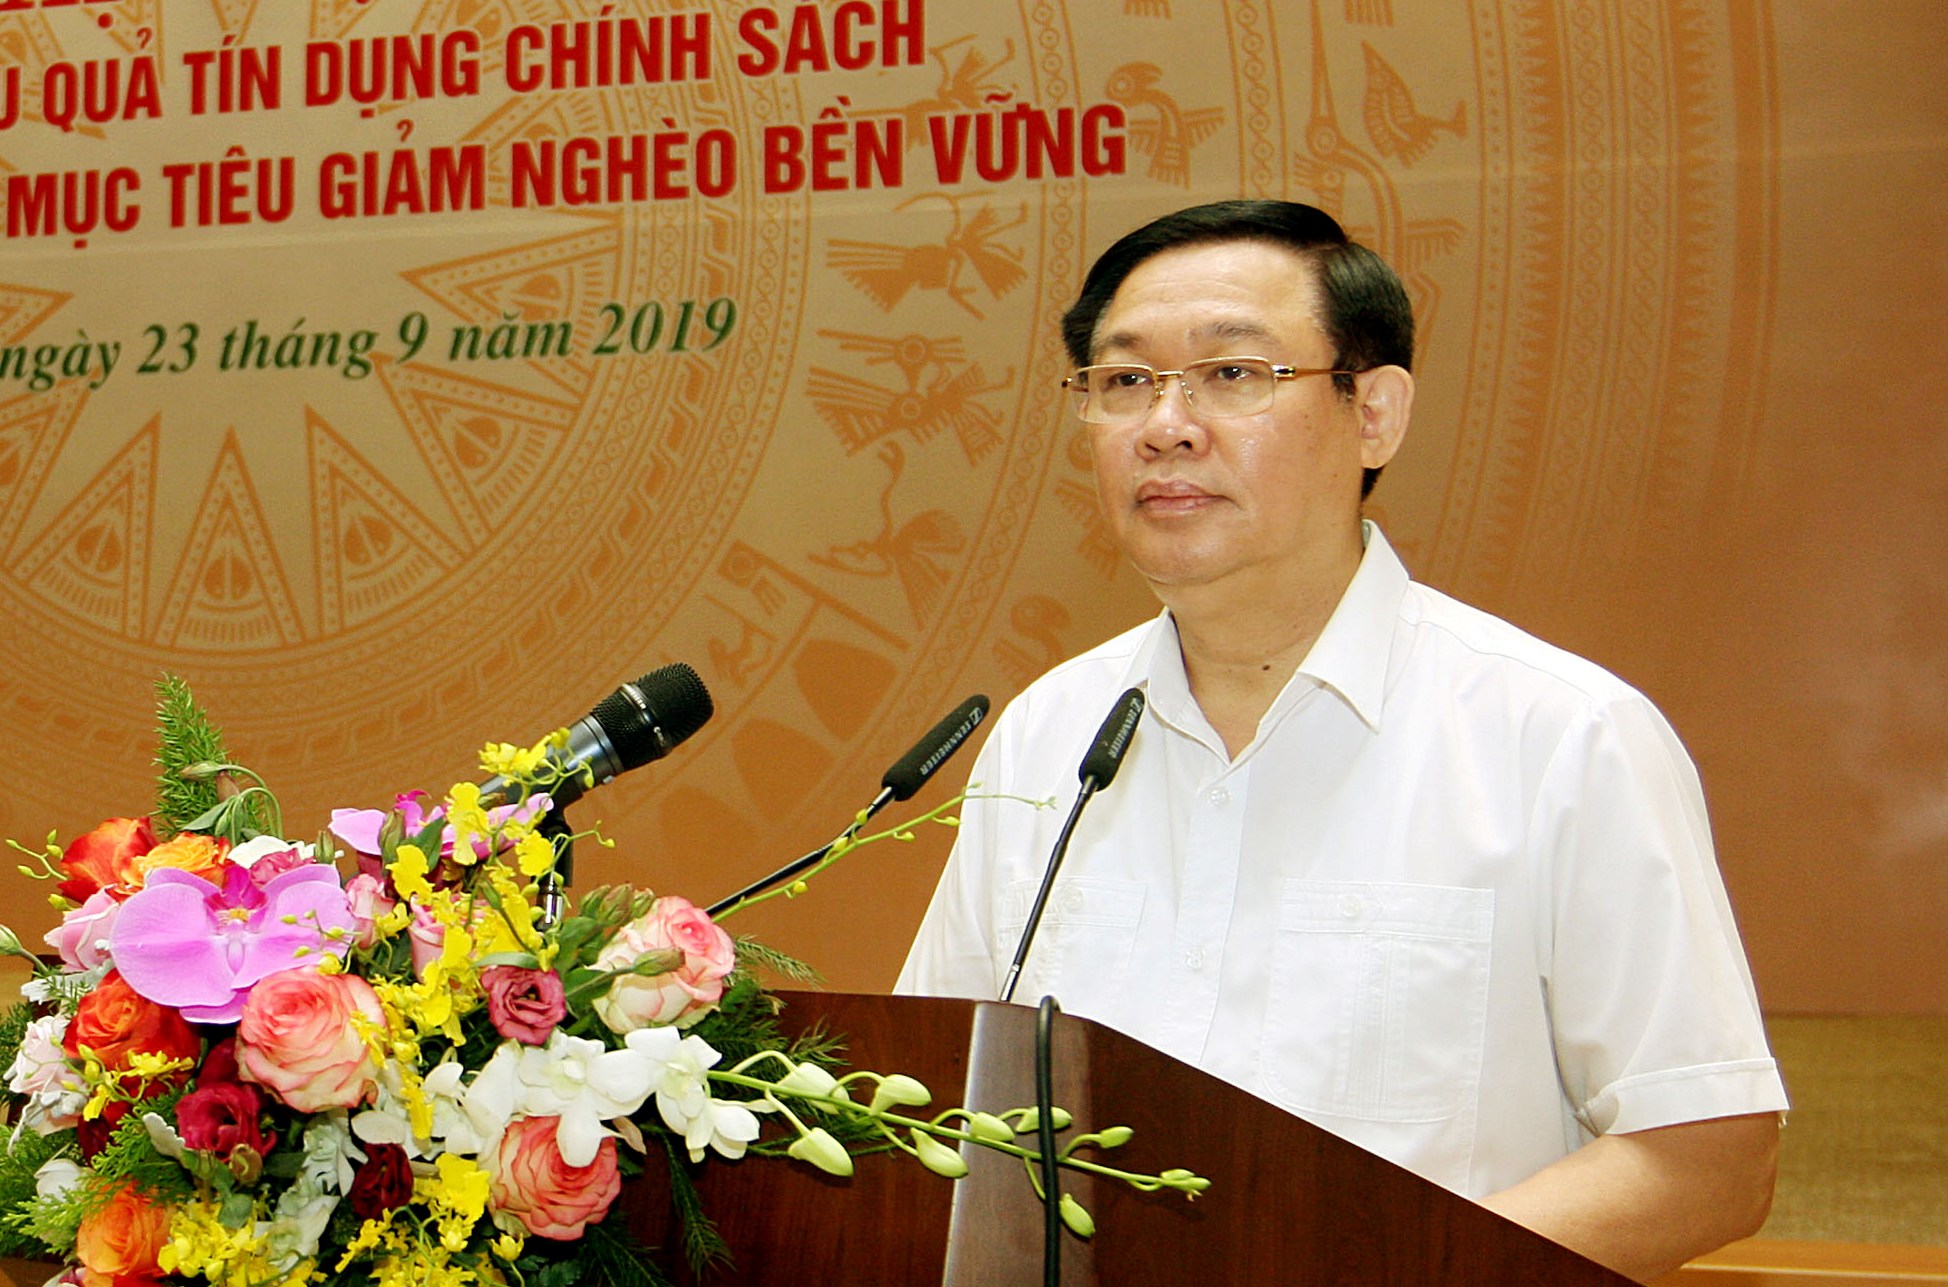 Phó Thủ tướng: Cần ưu tiên cân đối nguồn vốn ngân sách nhà nước để thực hiện các chương trình tín dụng chính sách xã hội. Ảnh VGP/Thành Chung